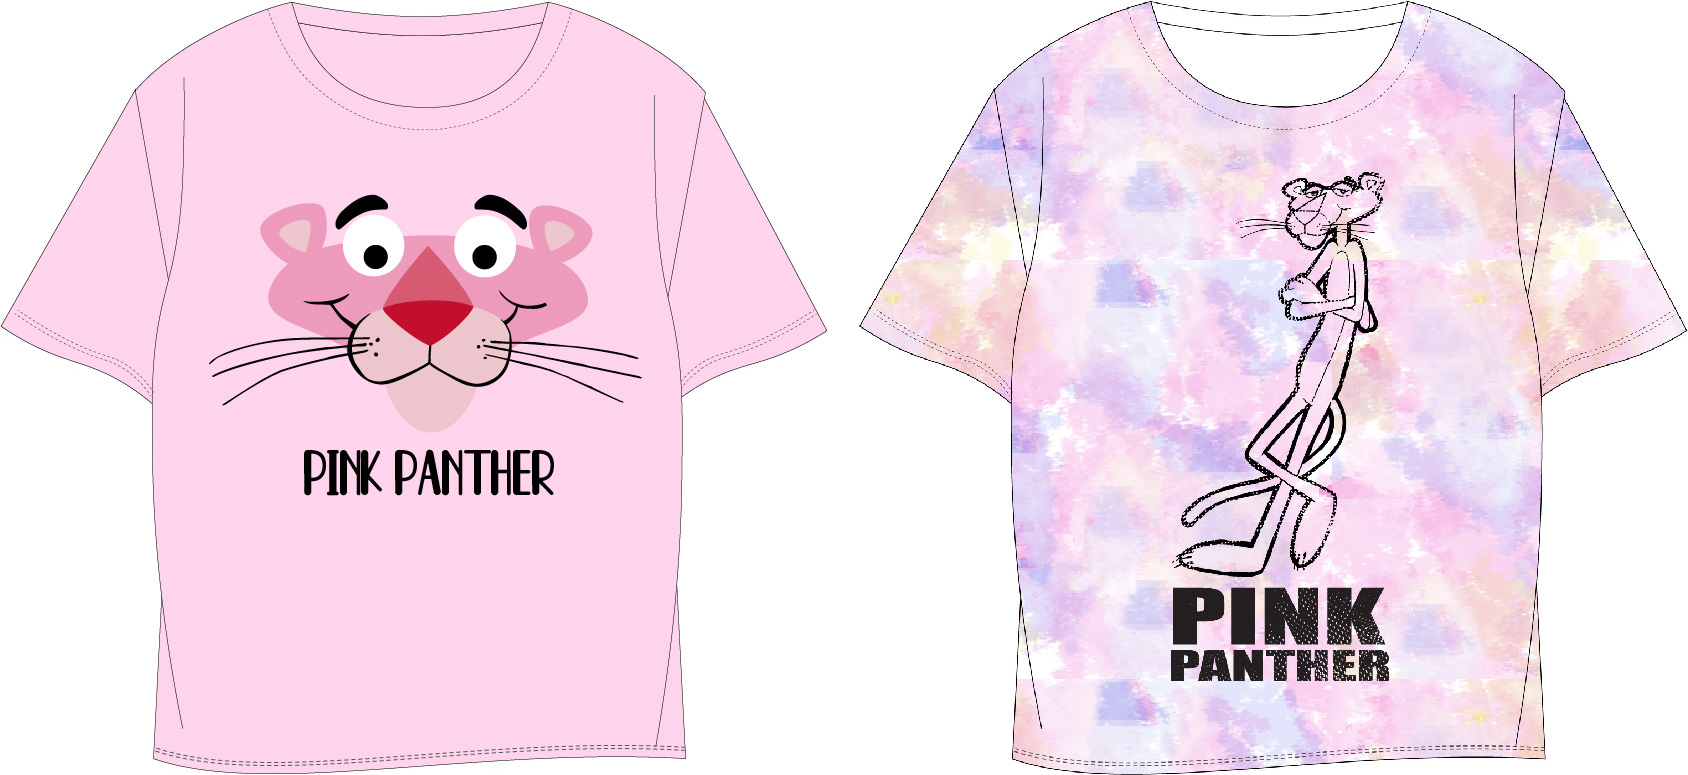 Růžový panter - licence Dívčí tričko - Růžový panter 5202068, růžová Barva: Růžová, Velikost: 152